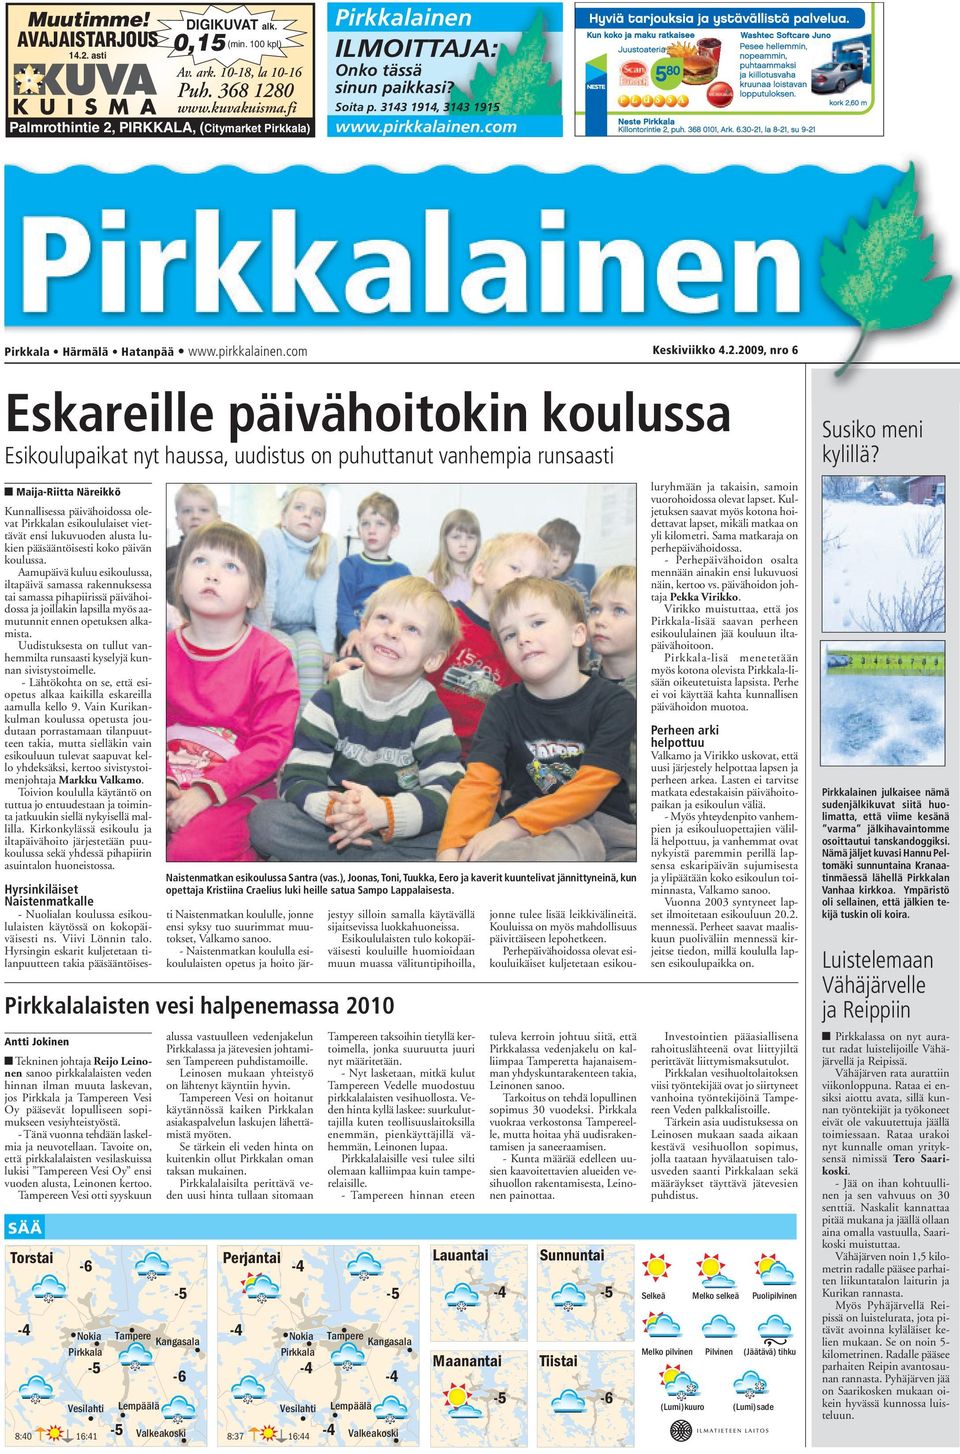 2.2009, nro 6 Eskareille päivähoitokin koulussa Esikoulupaikat nyt haussa, uudistus on puhuttanut vanhempia runsaasti Maija-Riitta Näreikkö Kunnallisessa päivähoidossa olevat Pirkkalan esikoululaiset